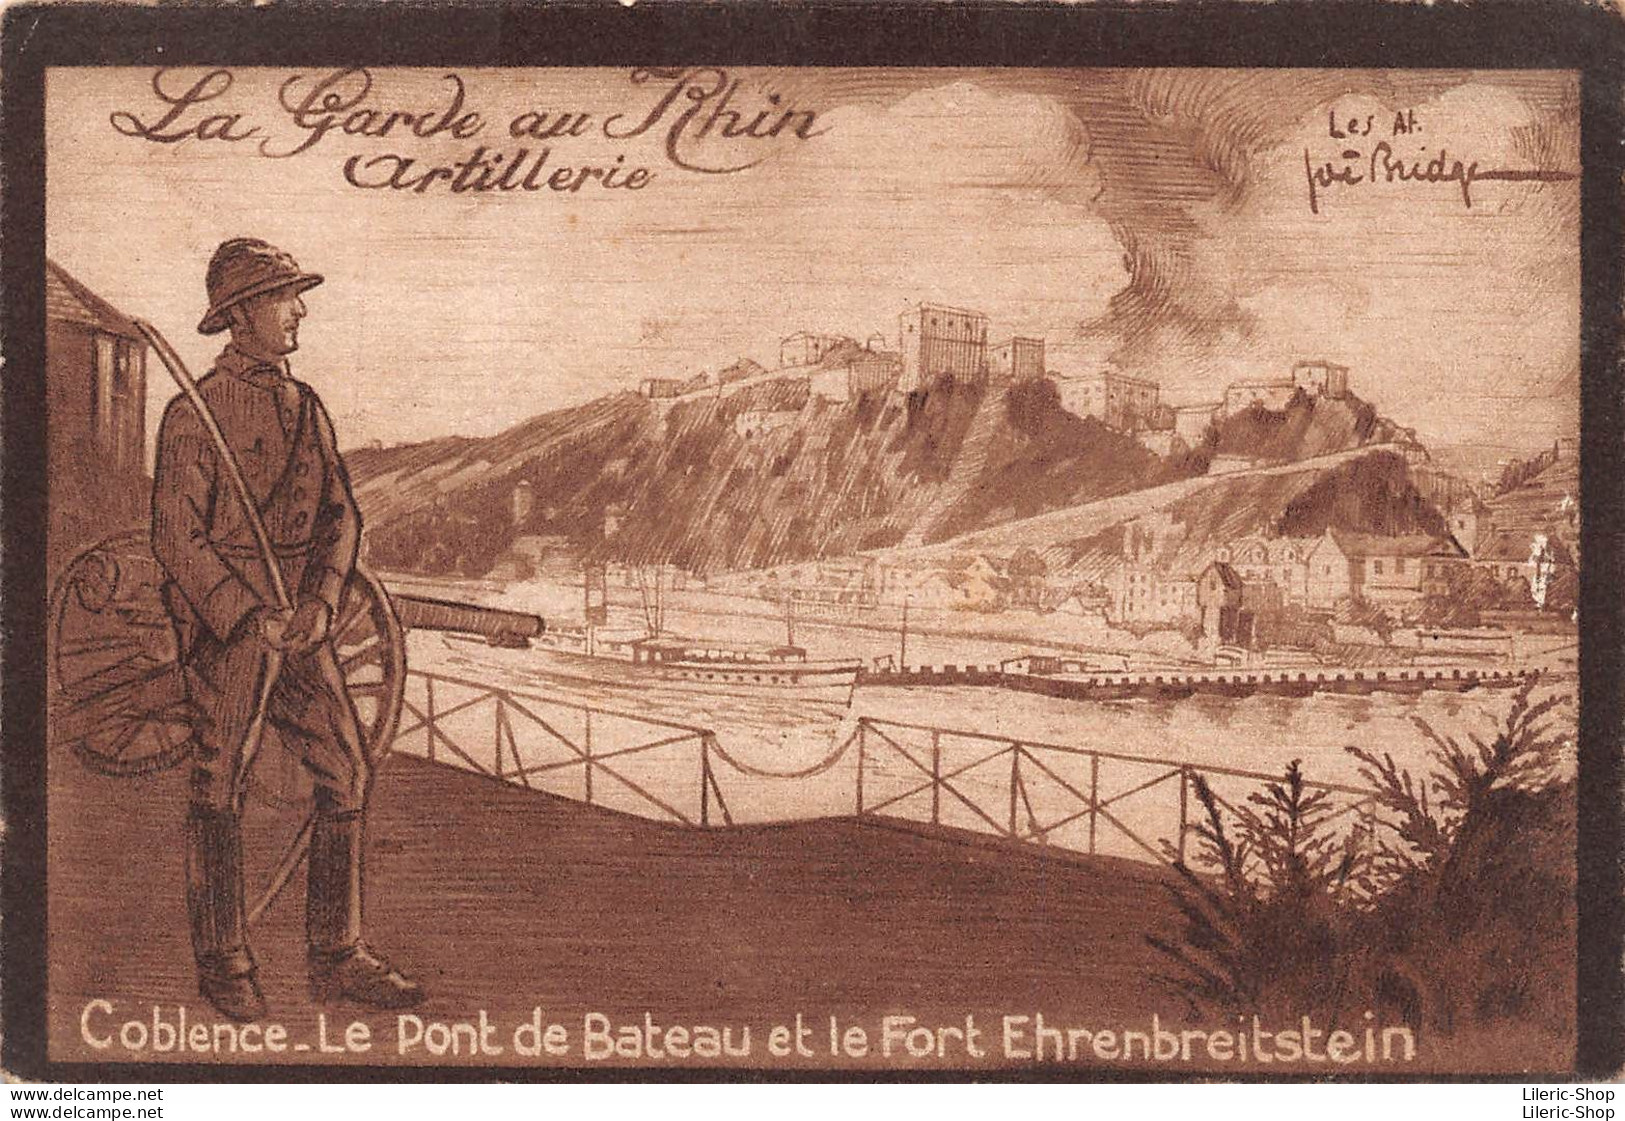 La Garde Au Rhin Artillerie Coblence. Le Pont De Bateau Et Le Fort Ehrenbreitstein Illustrateur Joë BRIDGE - Barracks